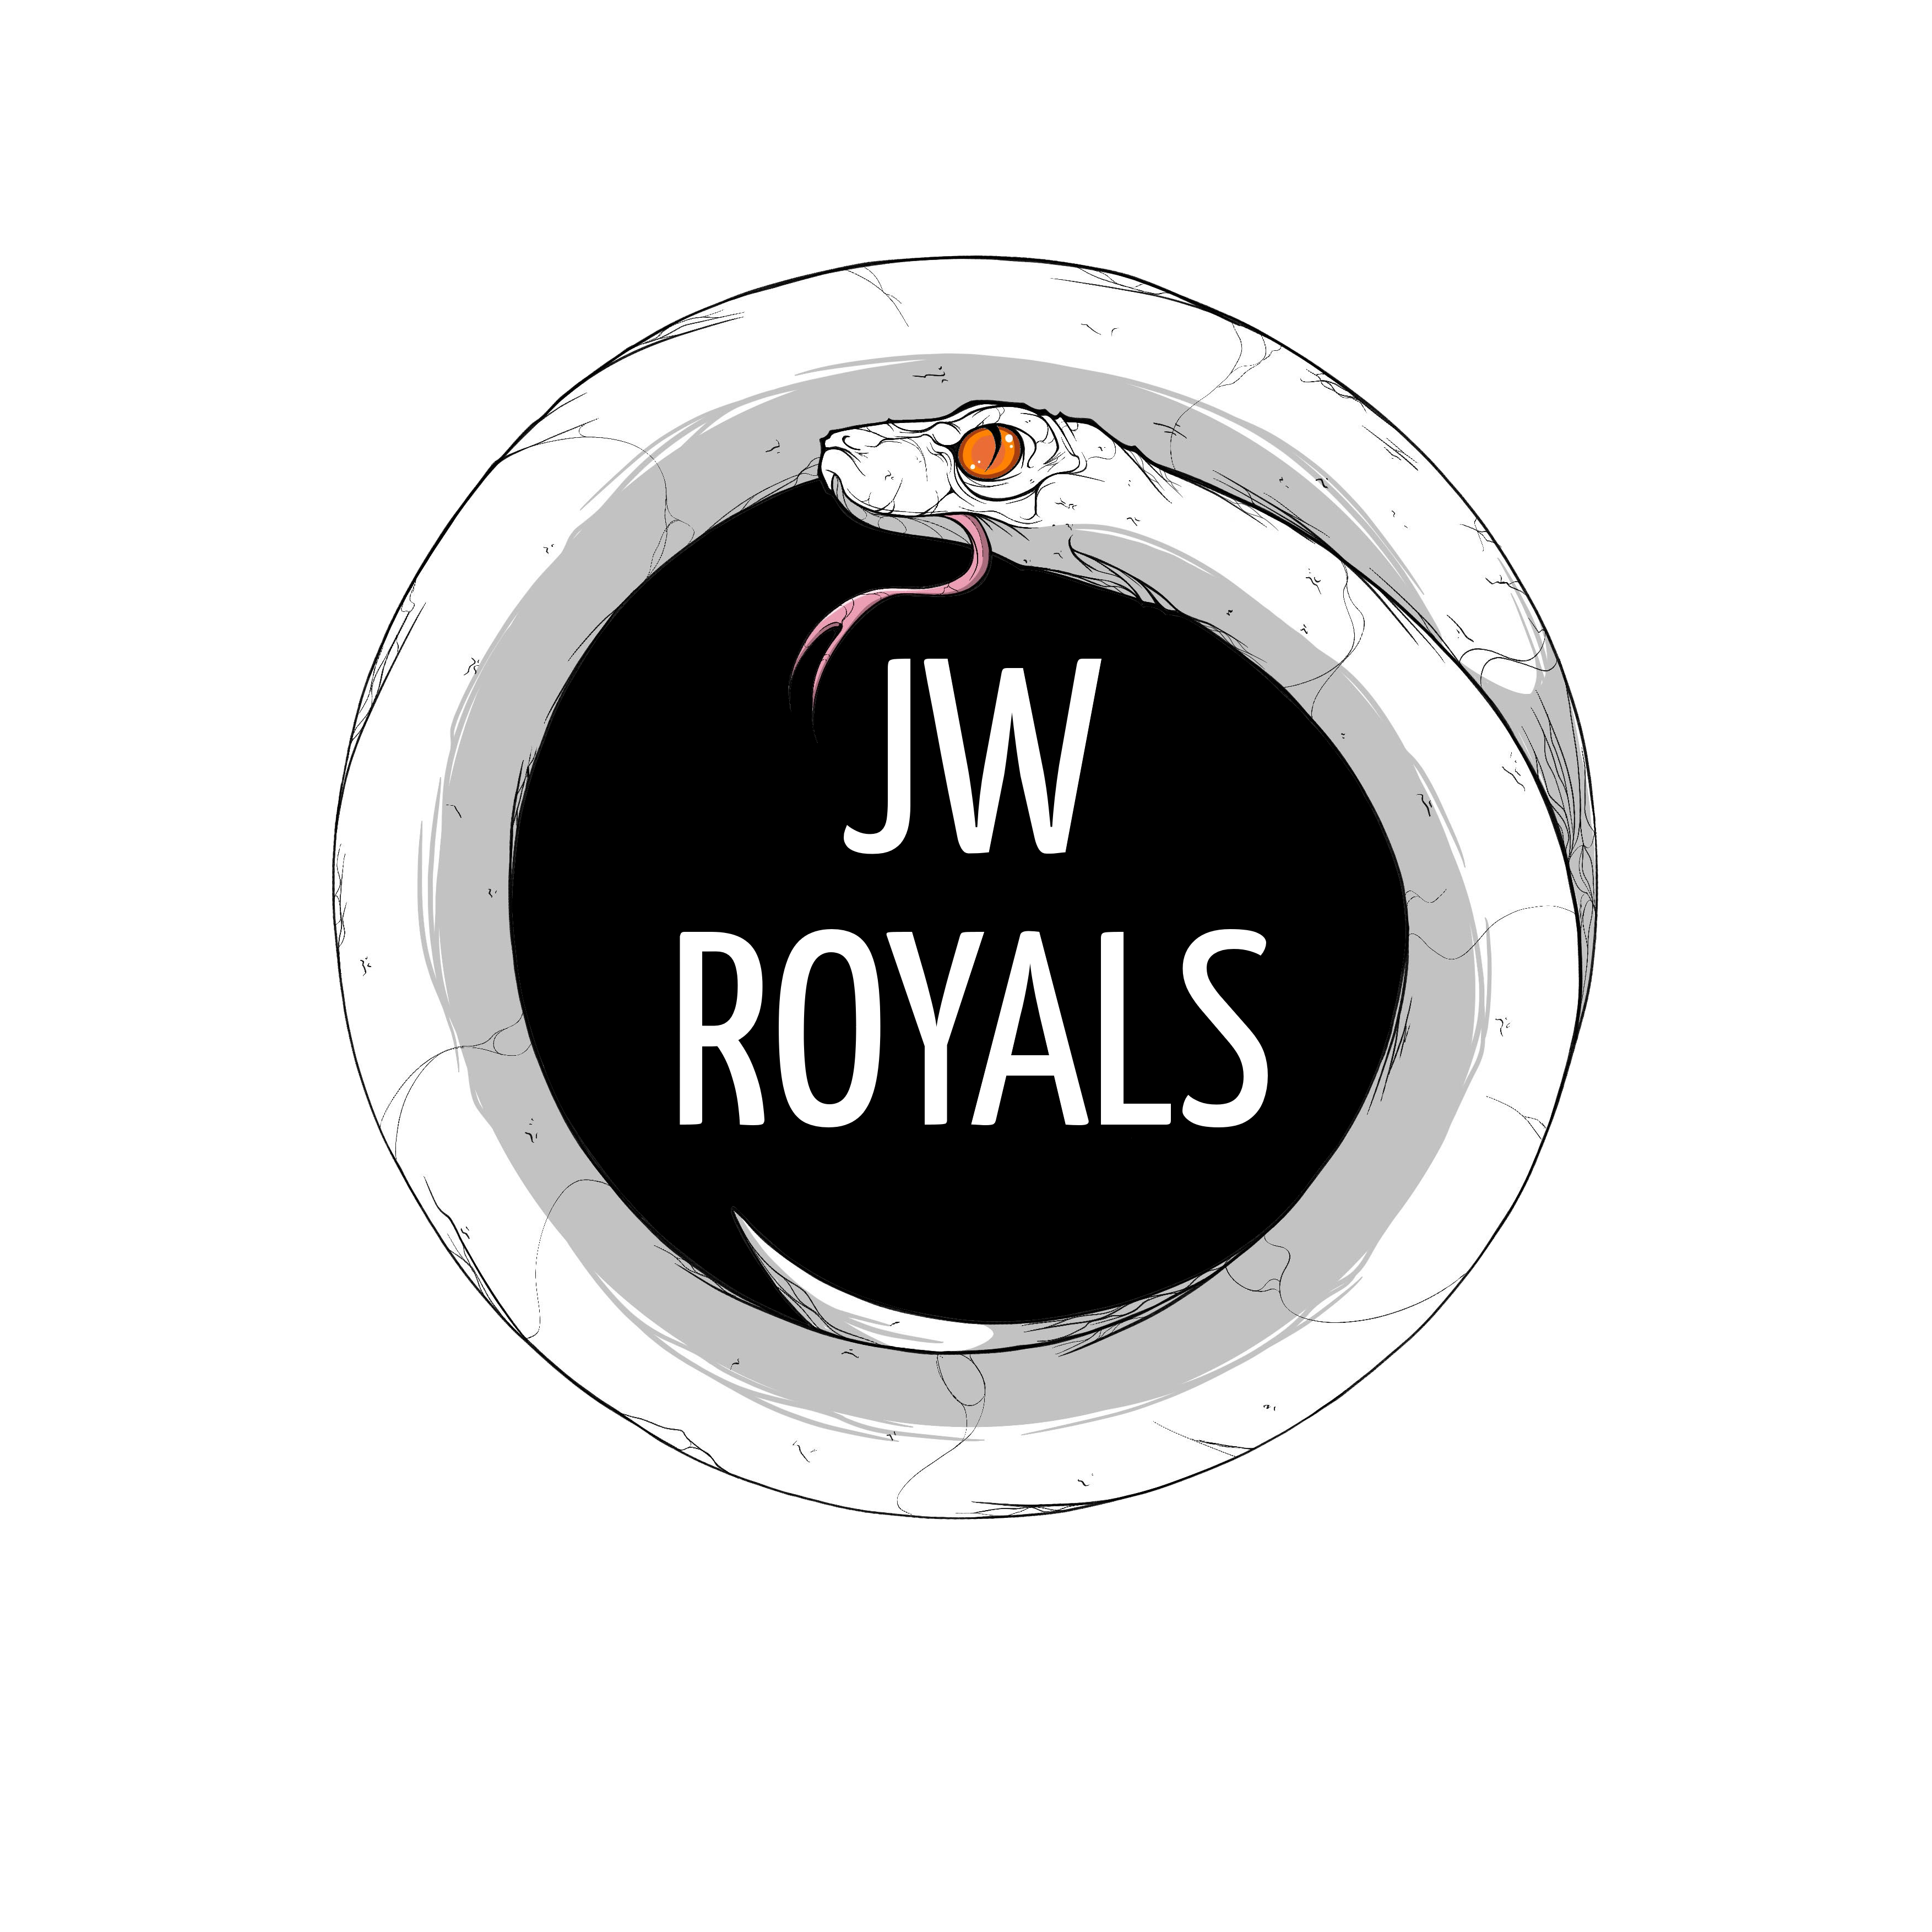 JW Royals